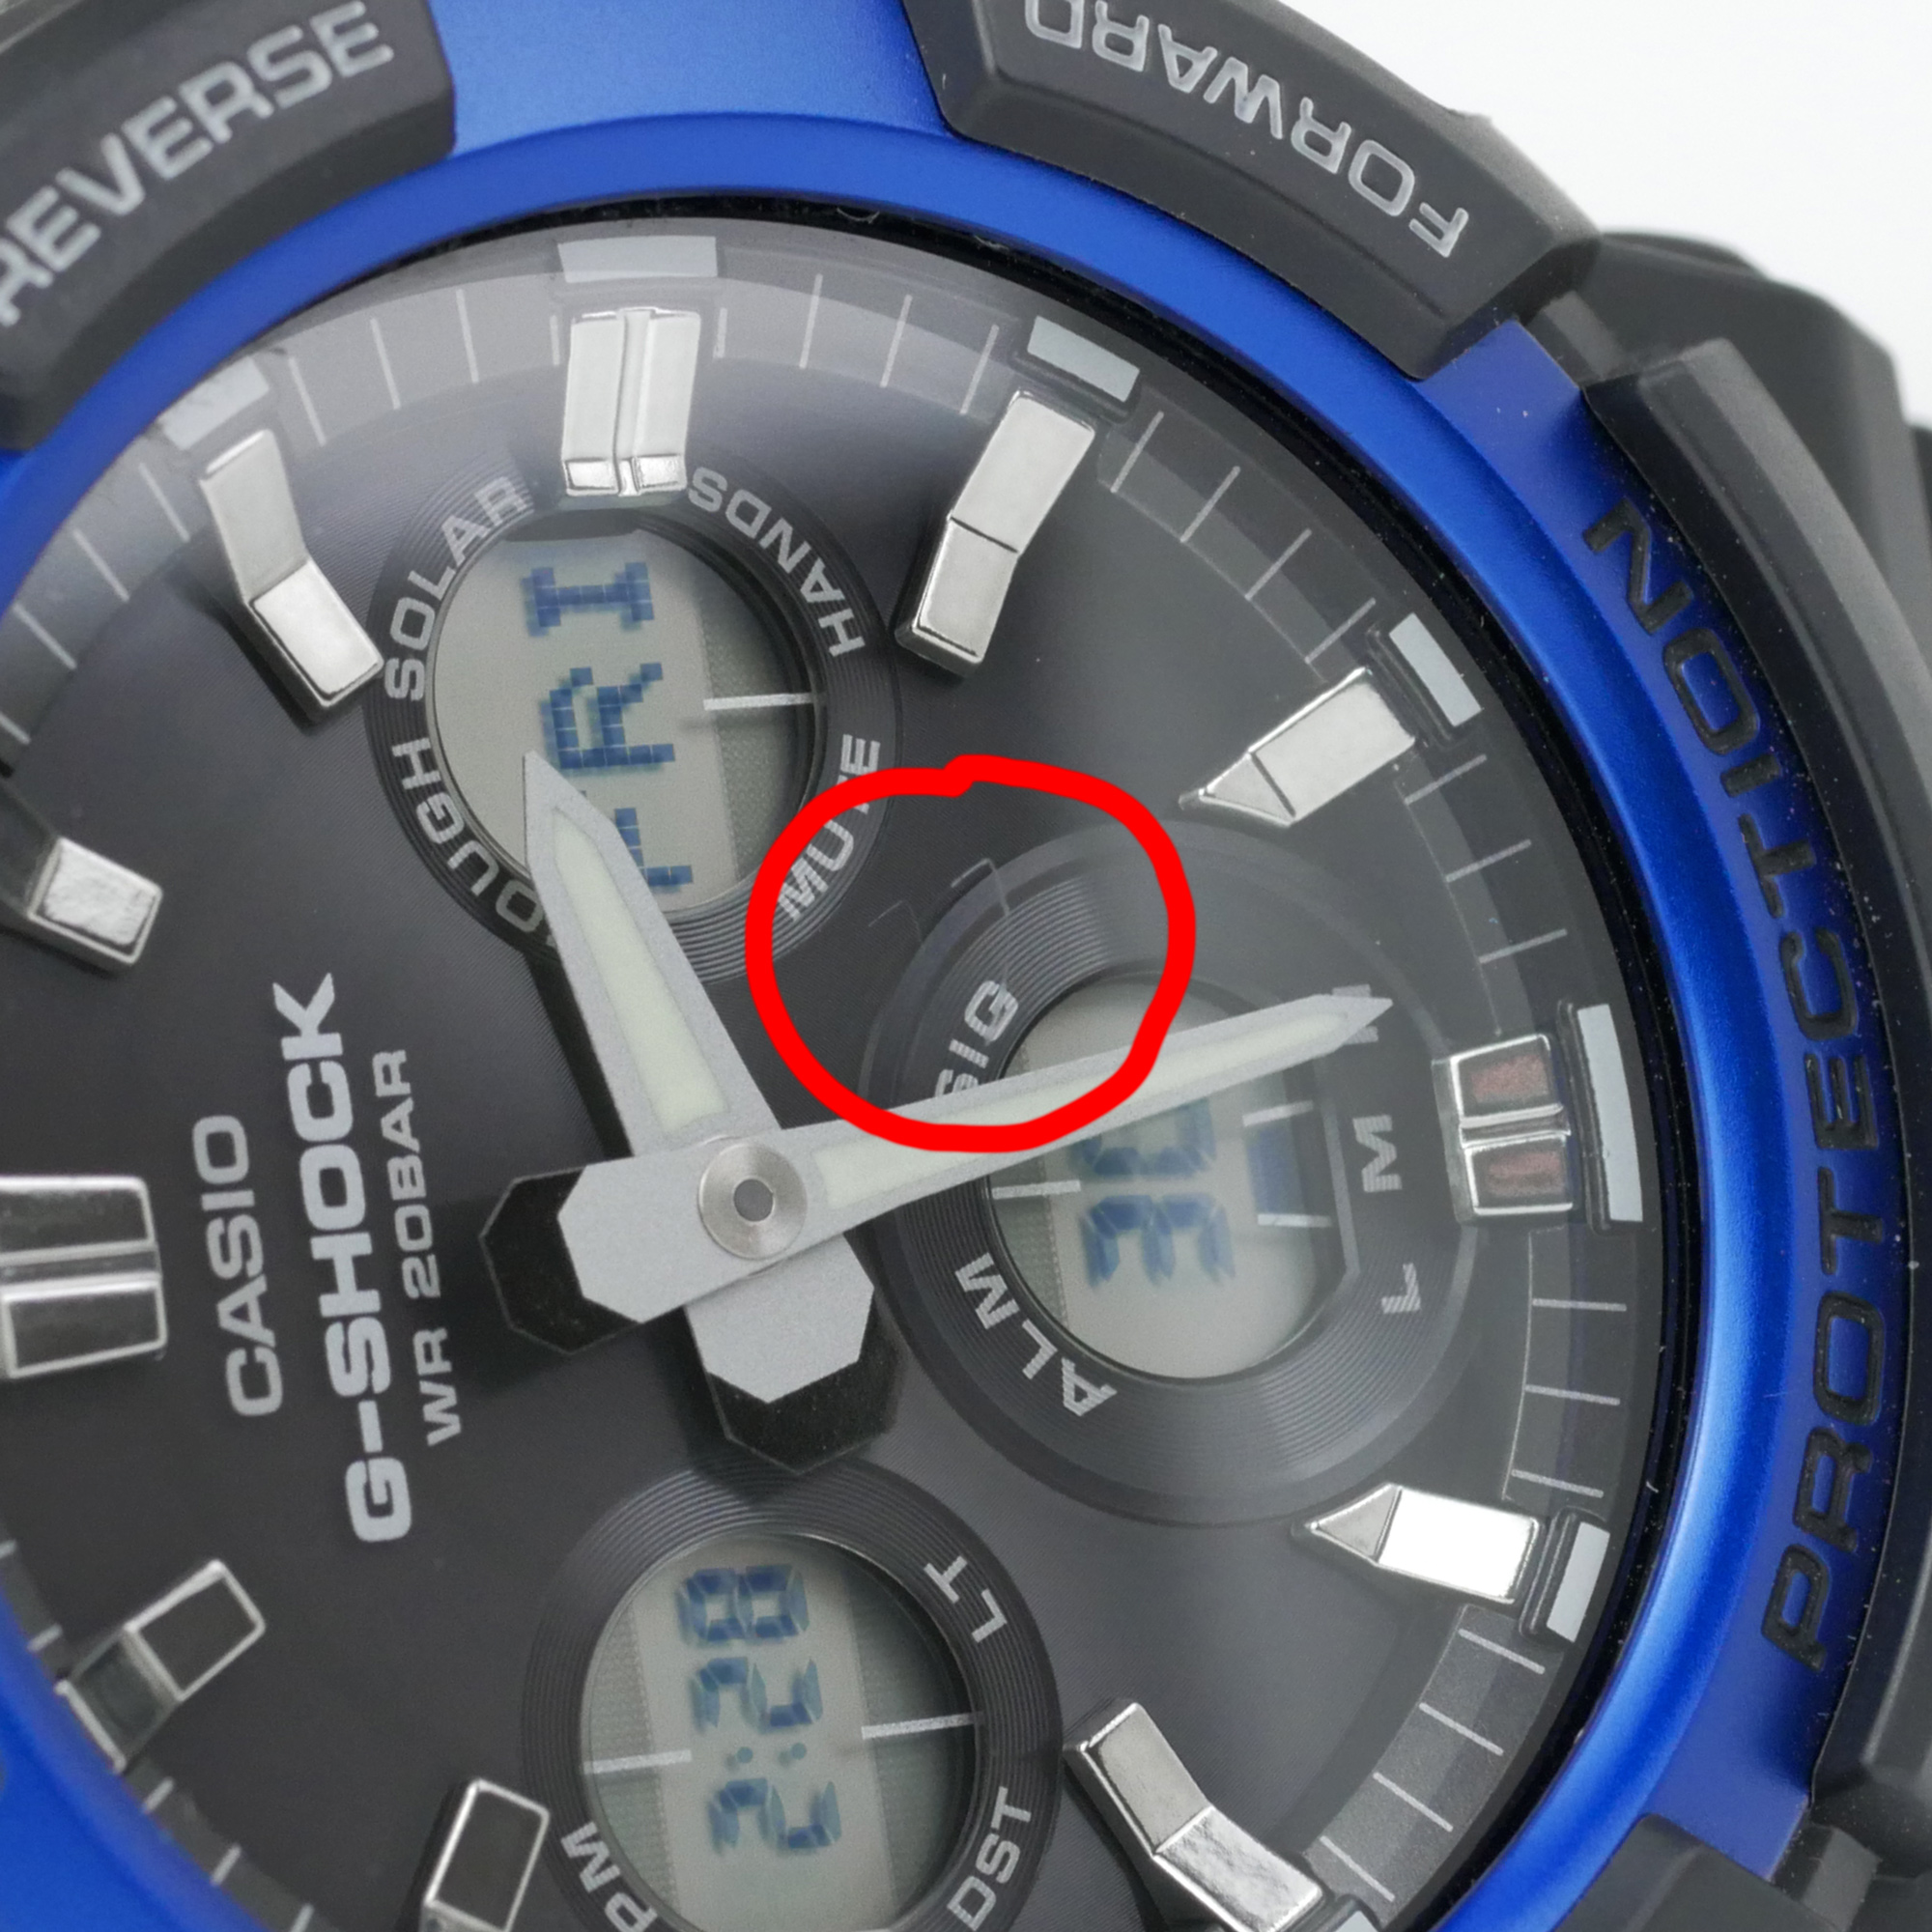 Casio G-Shock Solar Powered Analog-Digital Watch GAS100B-1A2